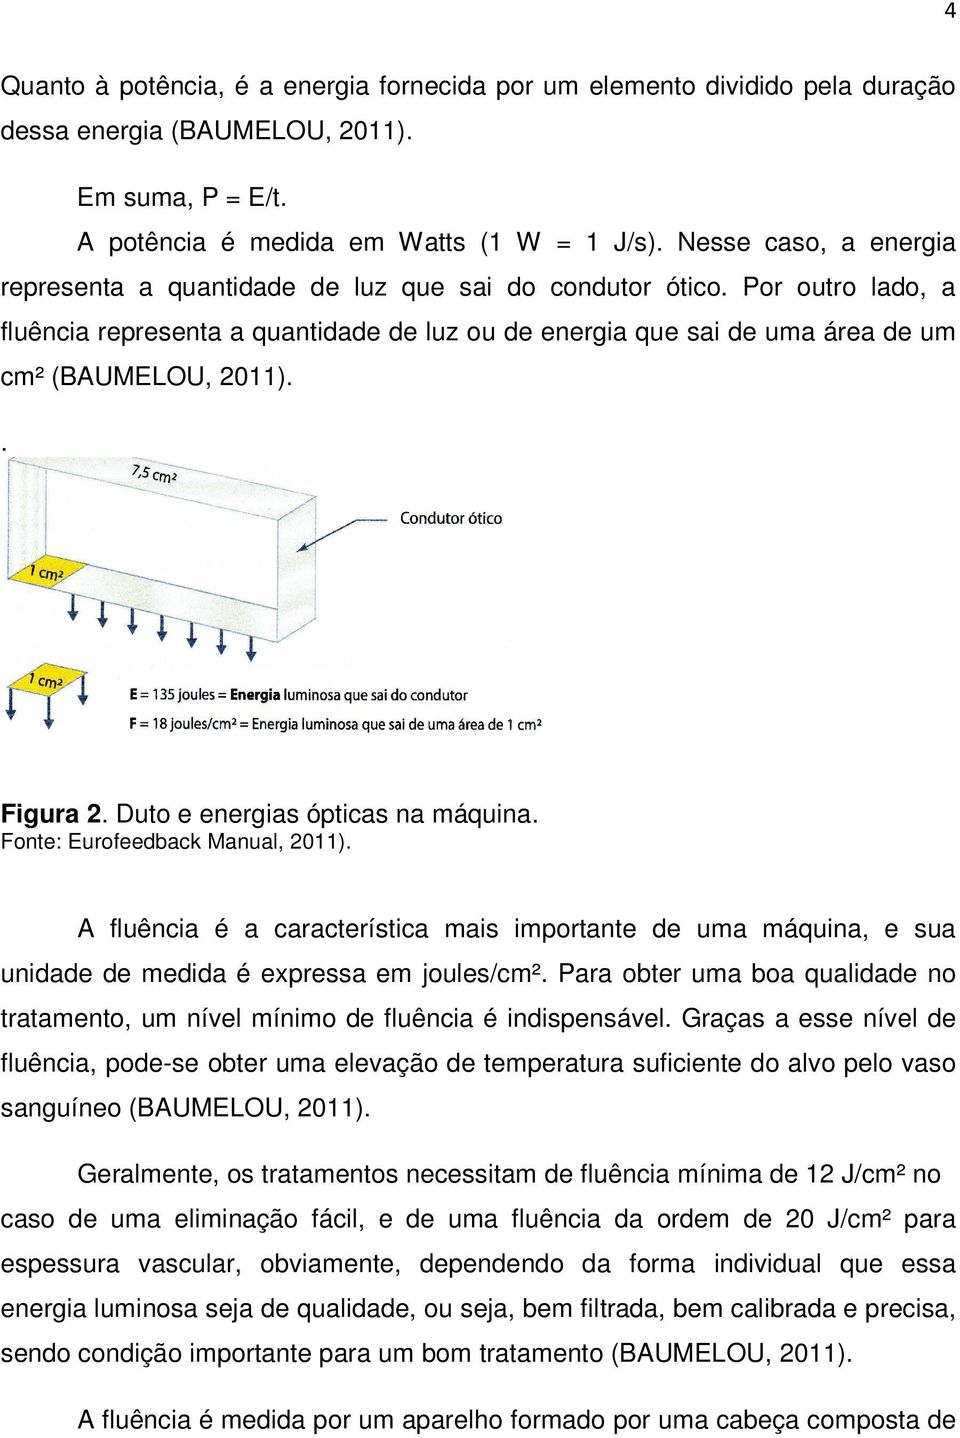 . Figura 2. Duto e energias ópticas na máquina. Fonte: Eurofeedback Manual, 2011). A fluência é a característica mais importante de uma máquina, e sua unidade de medida é expressa em joules/cm².